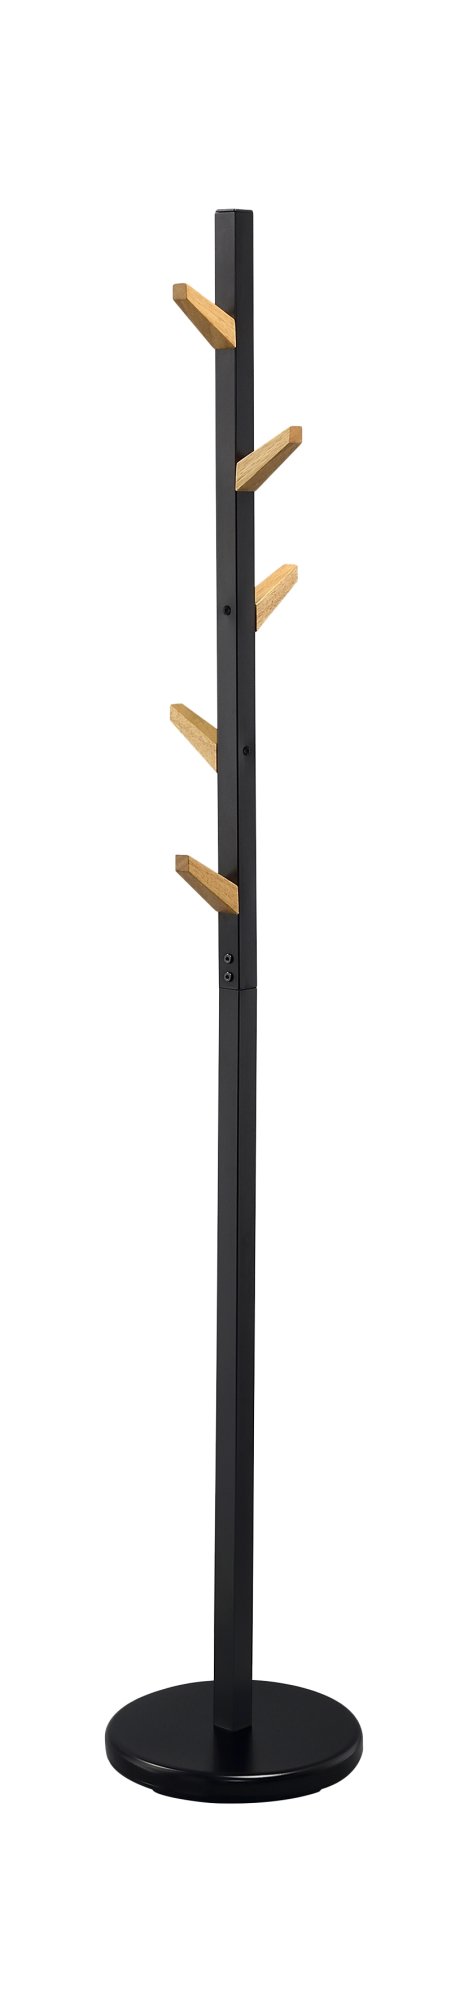 Stojanový věšák 28x177cm - Černá - Přírodní